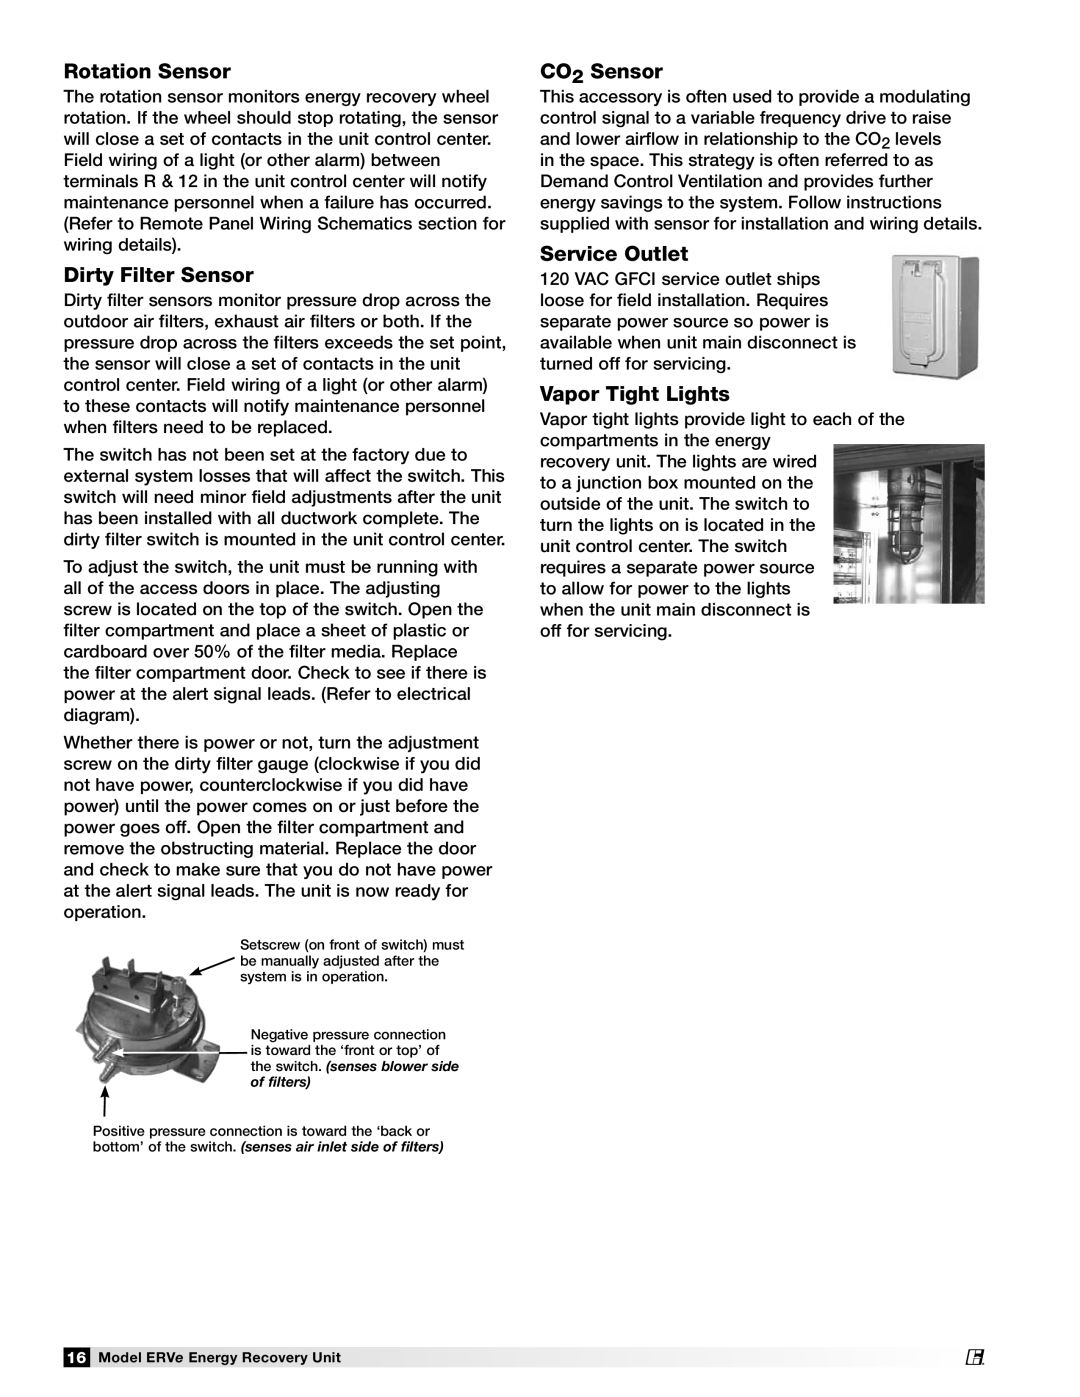 Greenheck Fan ERVe manual Rotation Sensor, Dirty Filter Sensor, CO2 Sensor, Service Outlet, Vapor Tight Lights 